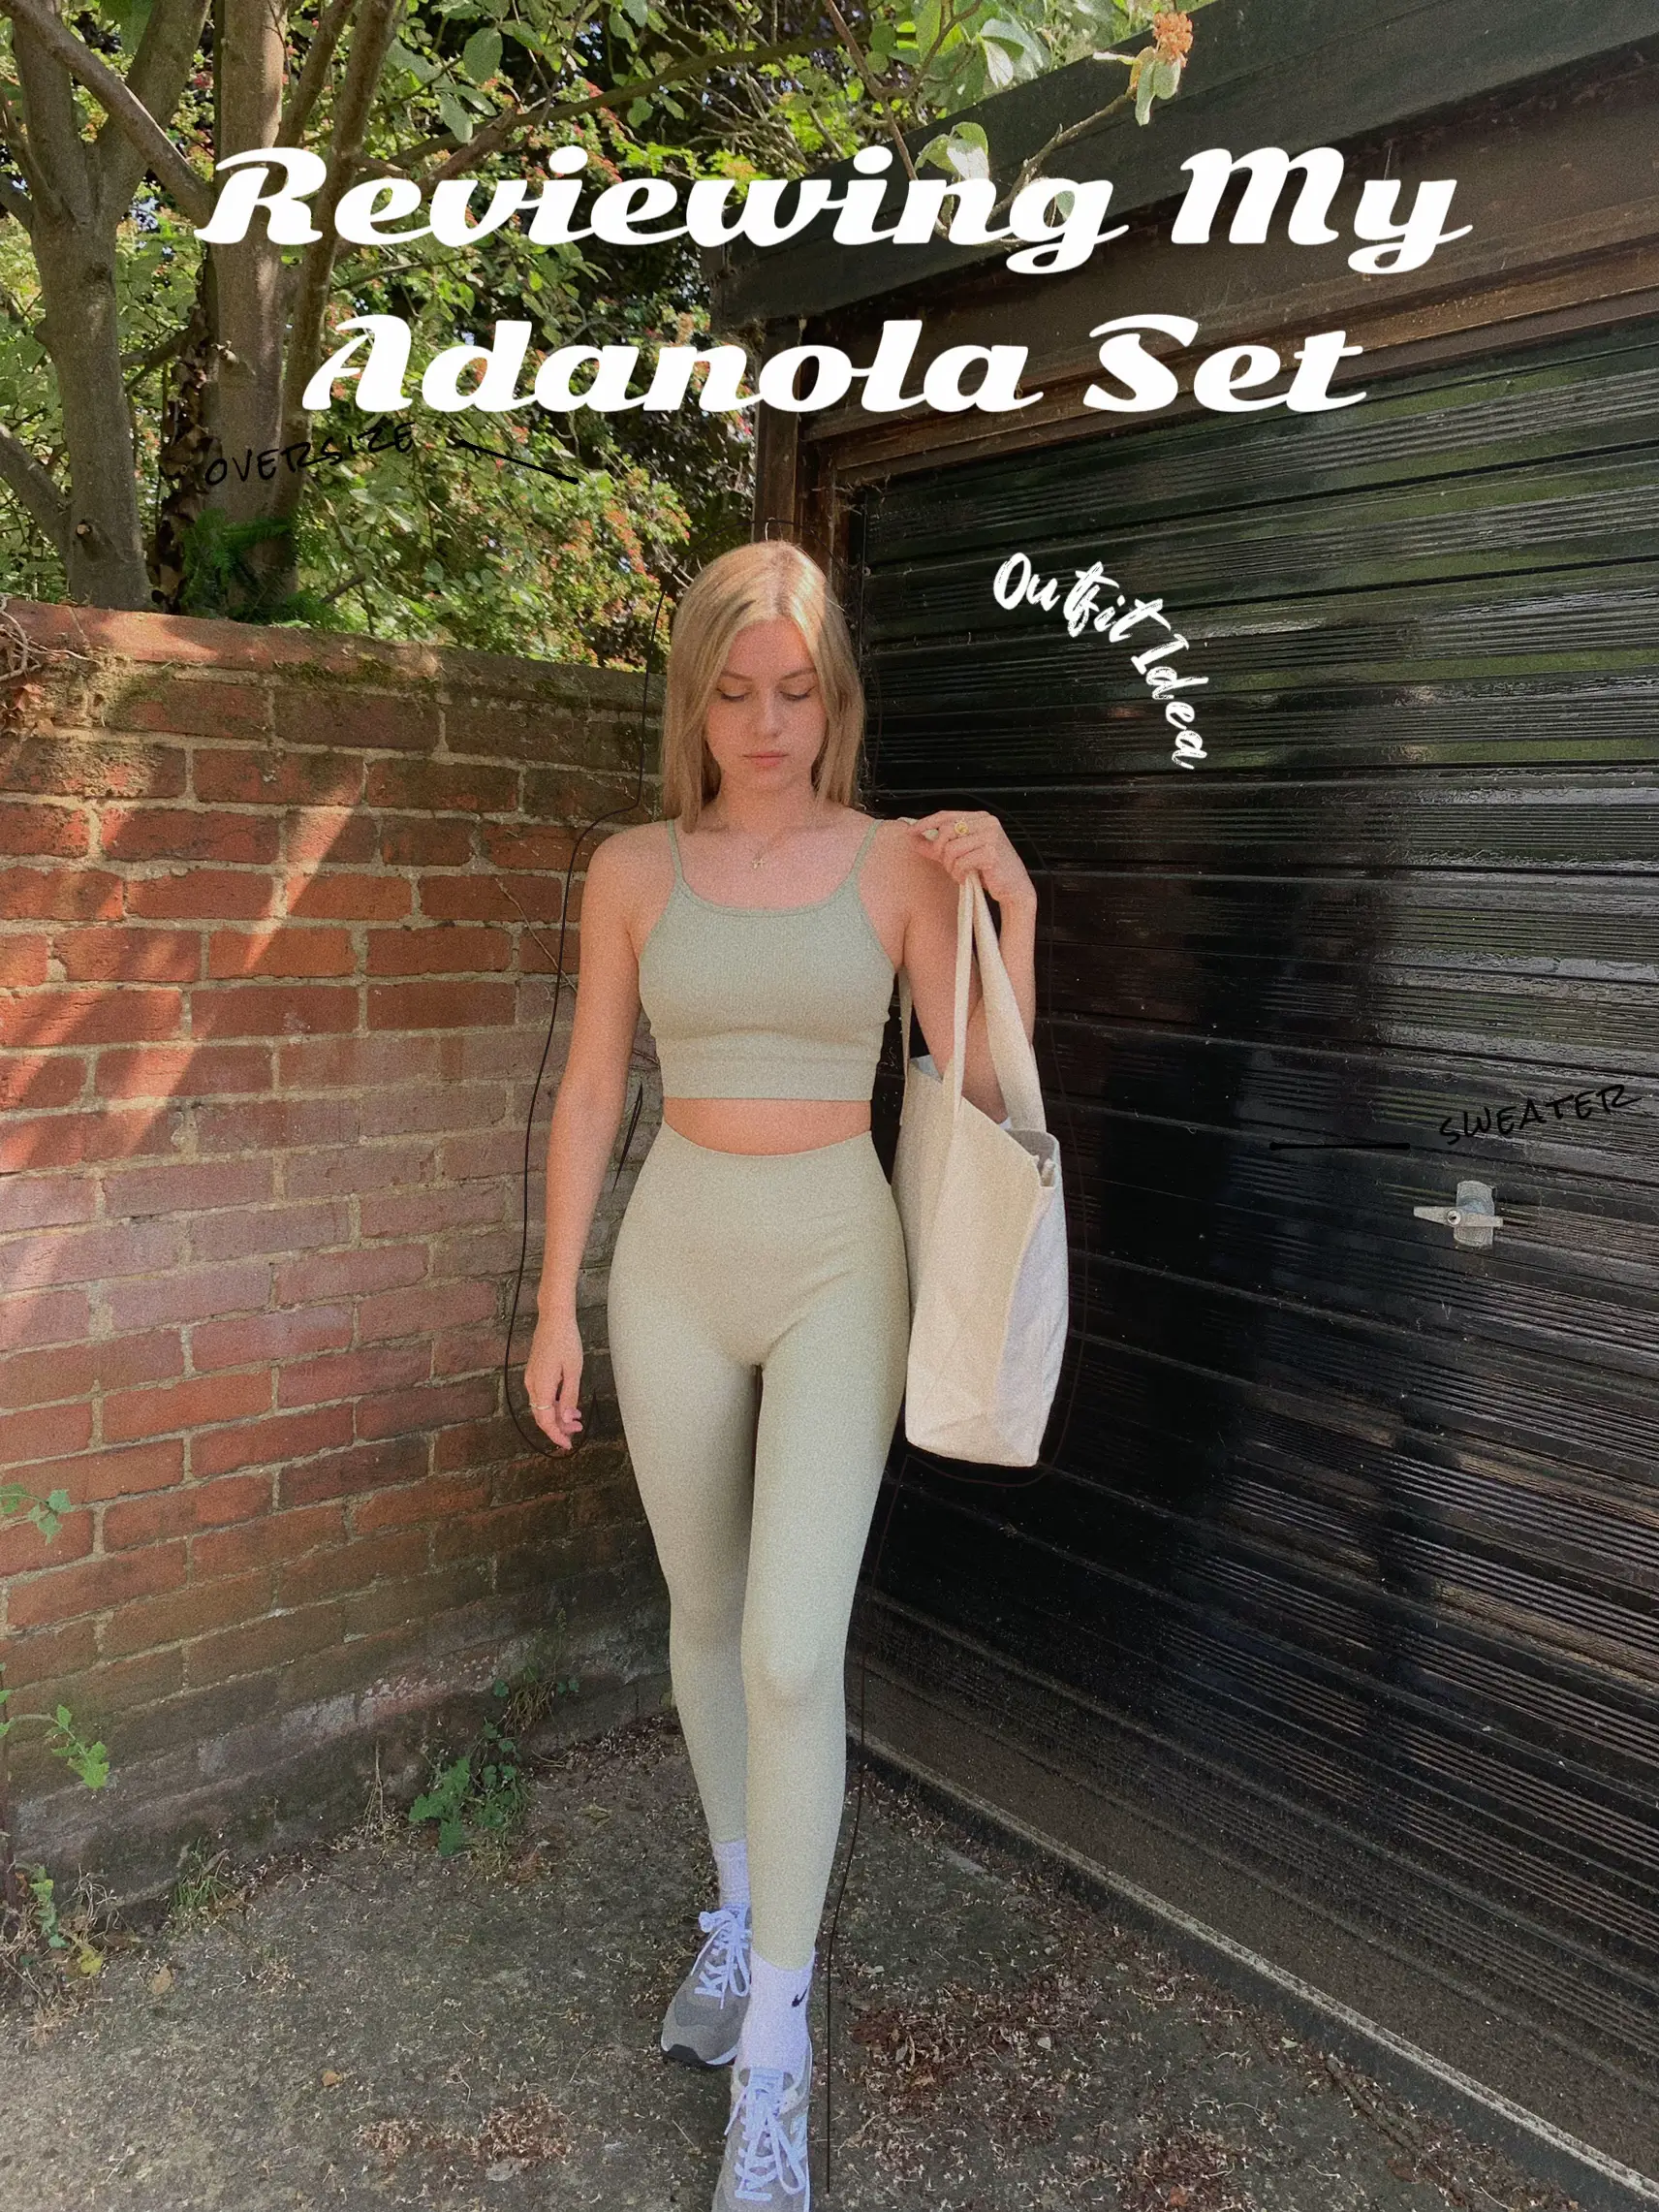 My honest review of Adanola activewear 